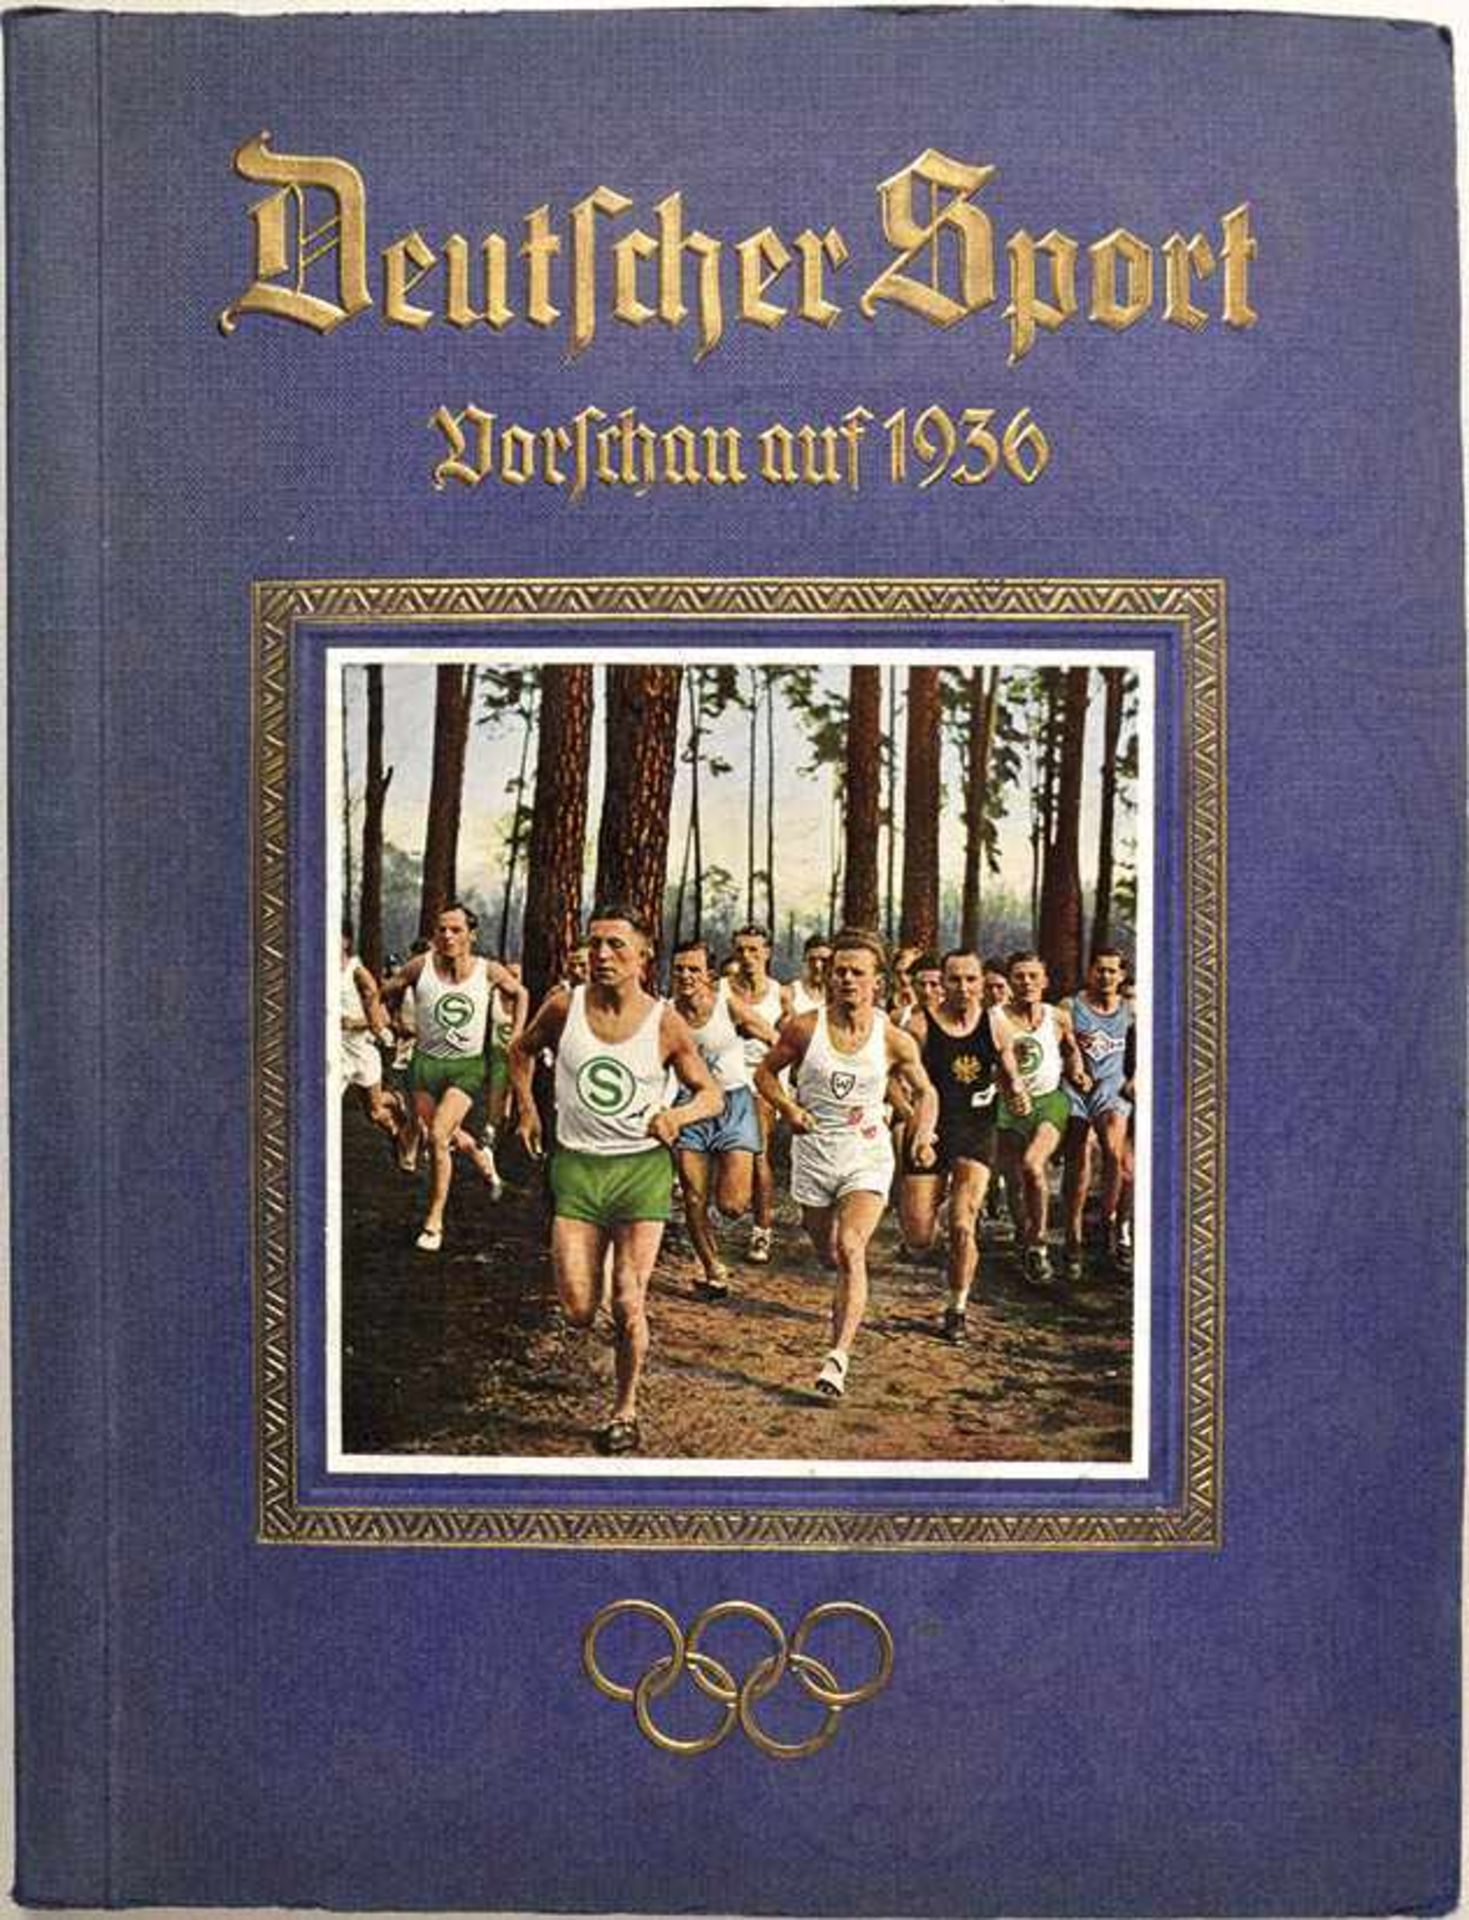 DEUTSCHER SPORT „Vorschau auf 1936“, Altona-Bahrenfeld 1934, 286 meist farb. Bilder, kpl., gld.gepr.